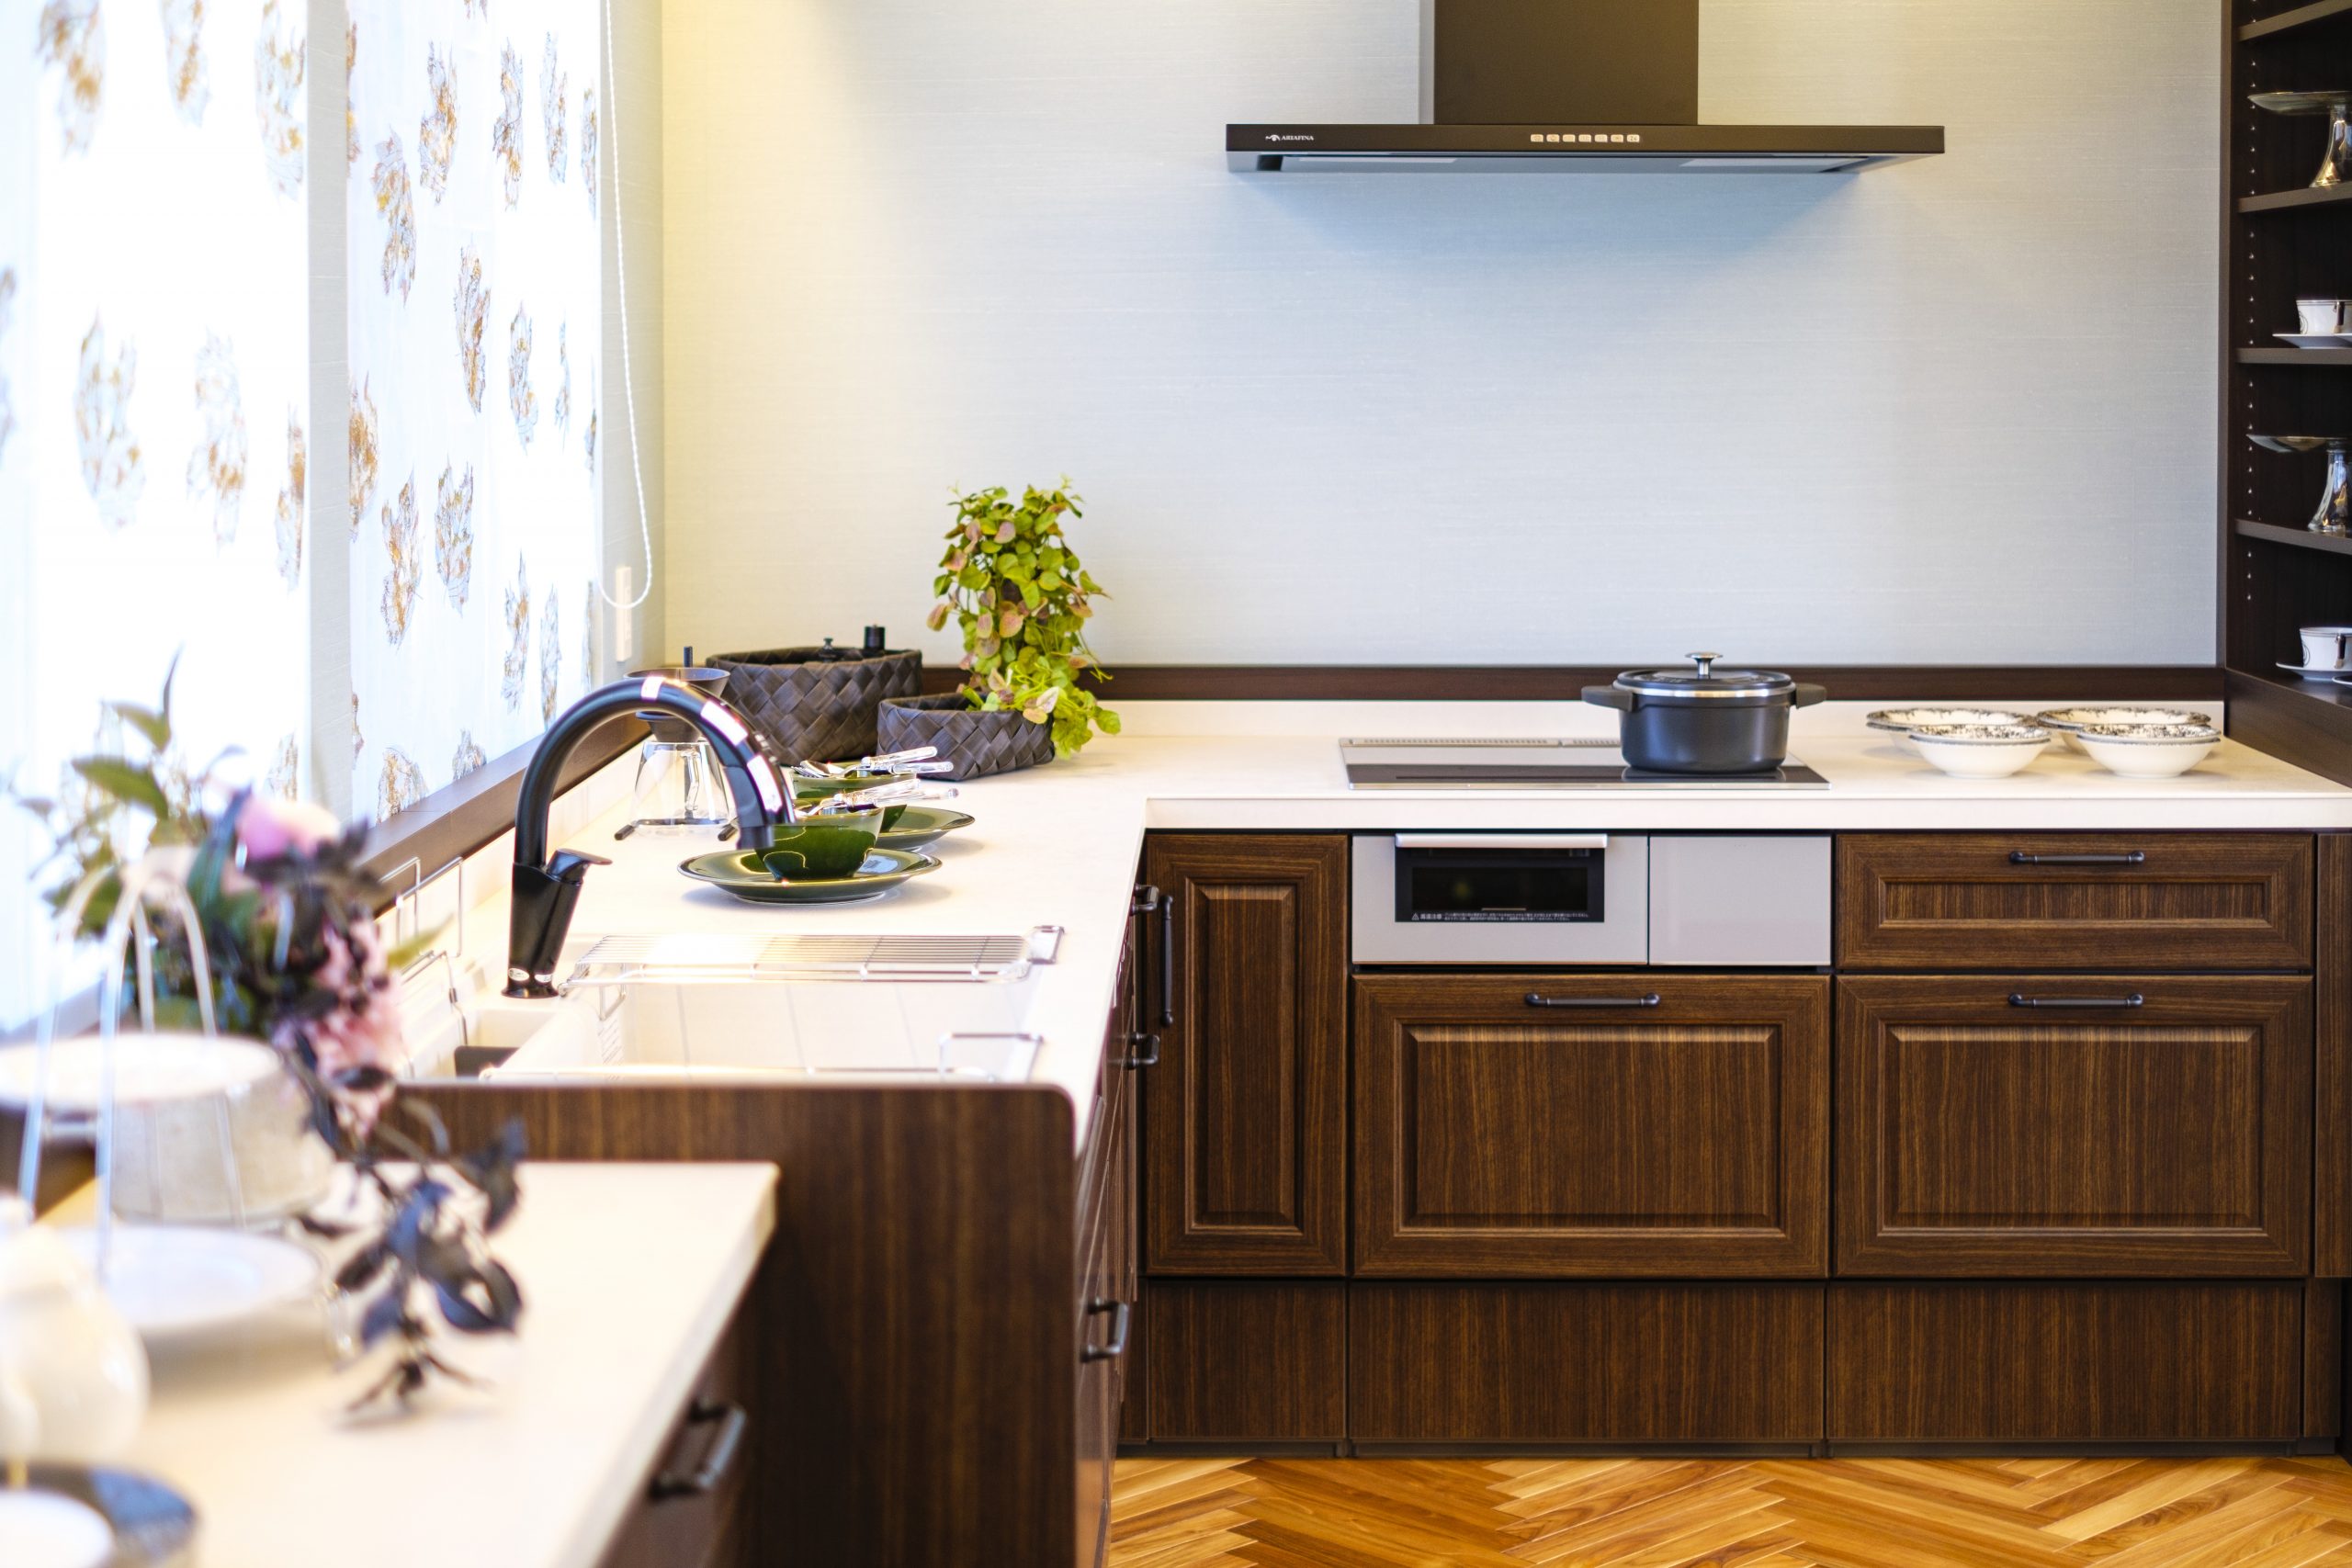 「L型キッチン」は作業動線が短く、作業スペースが確保できる